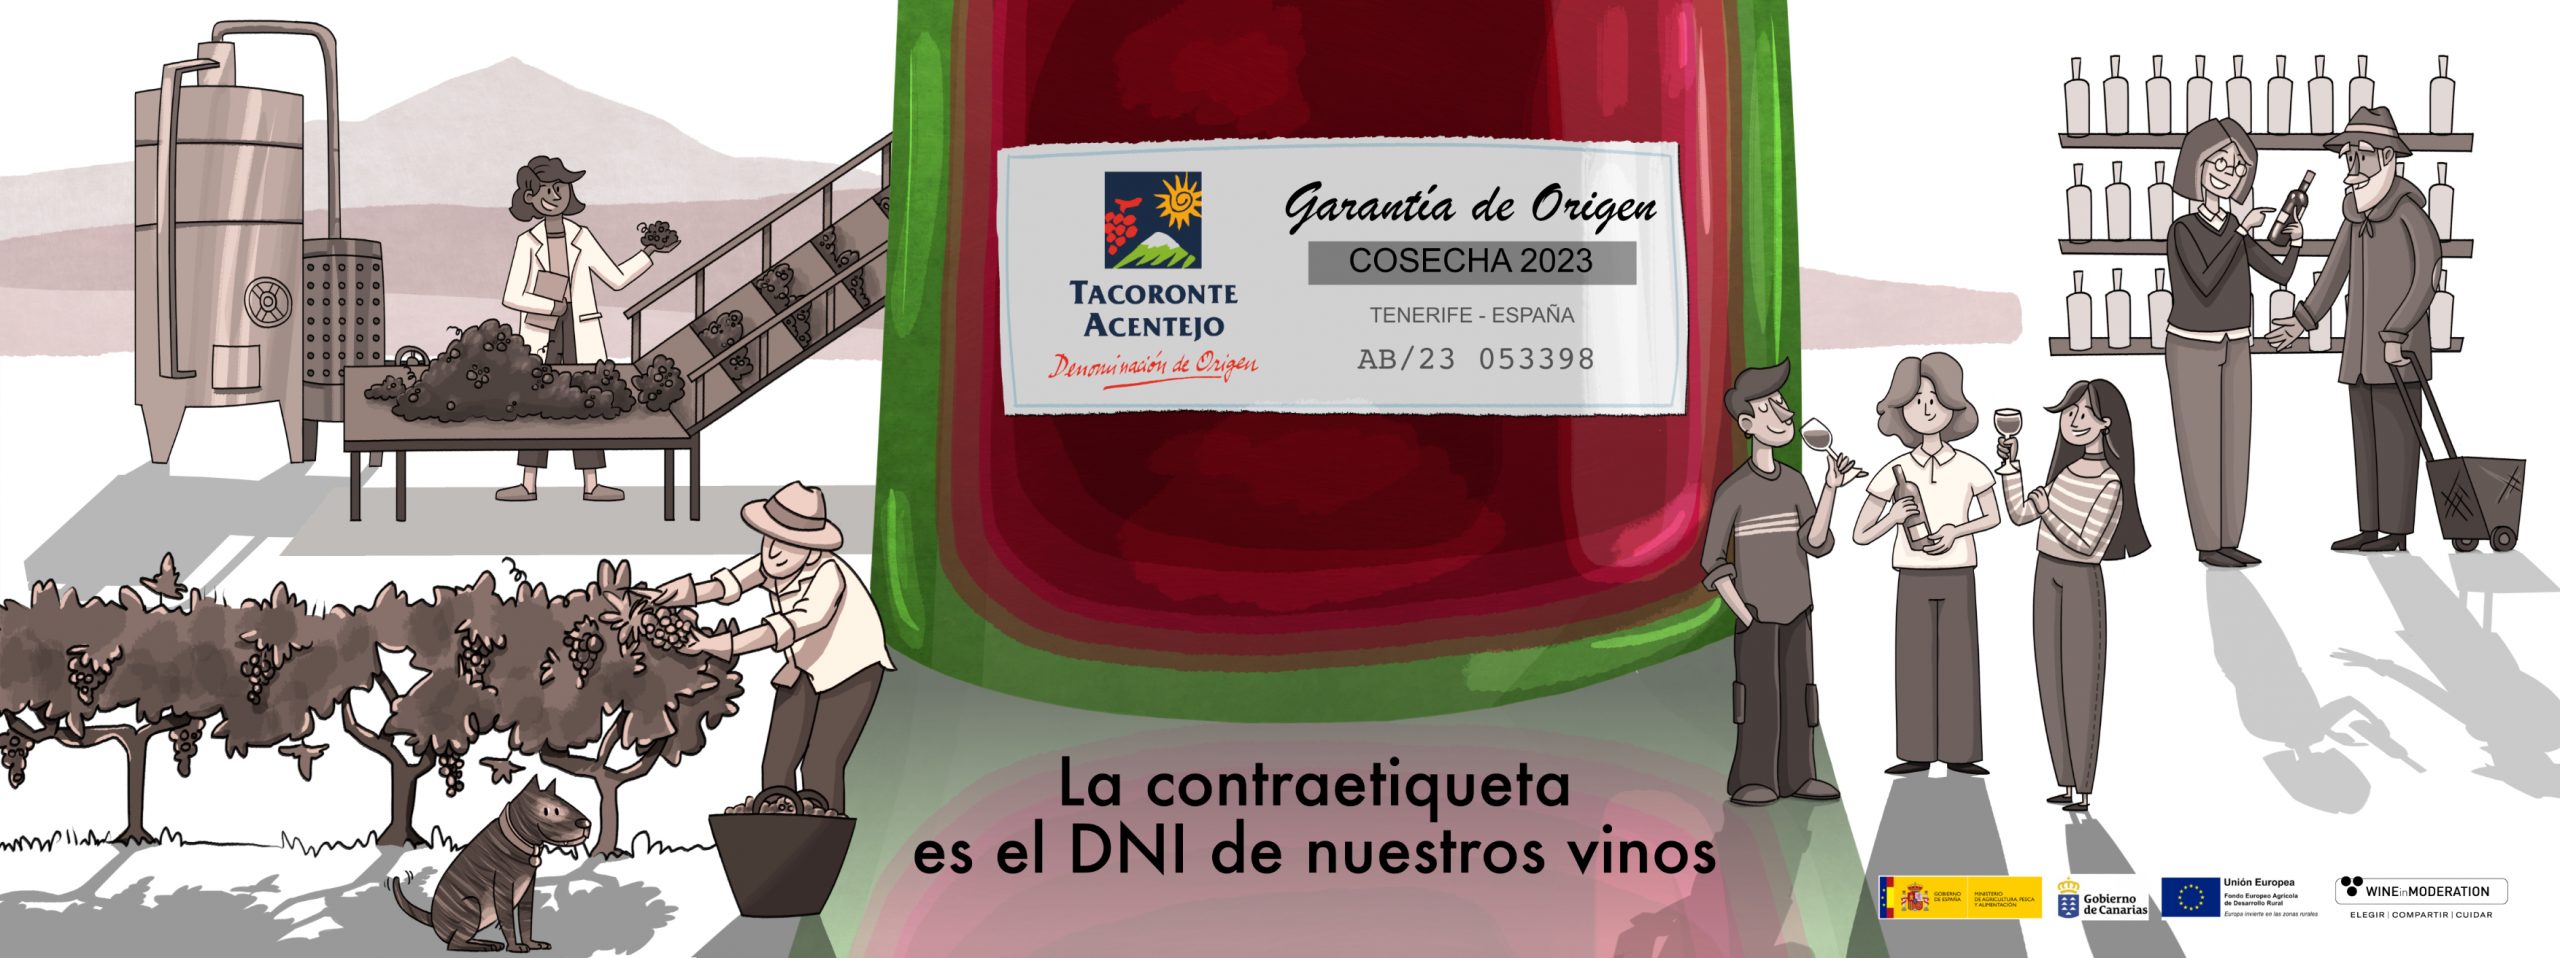 La Contraetiqueta: el garante de la autenticidad en los Vinos de Tacoronte-Acentejo